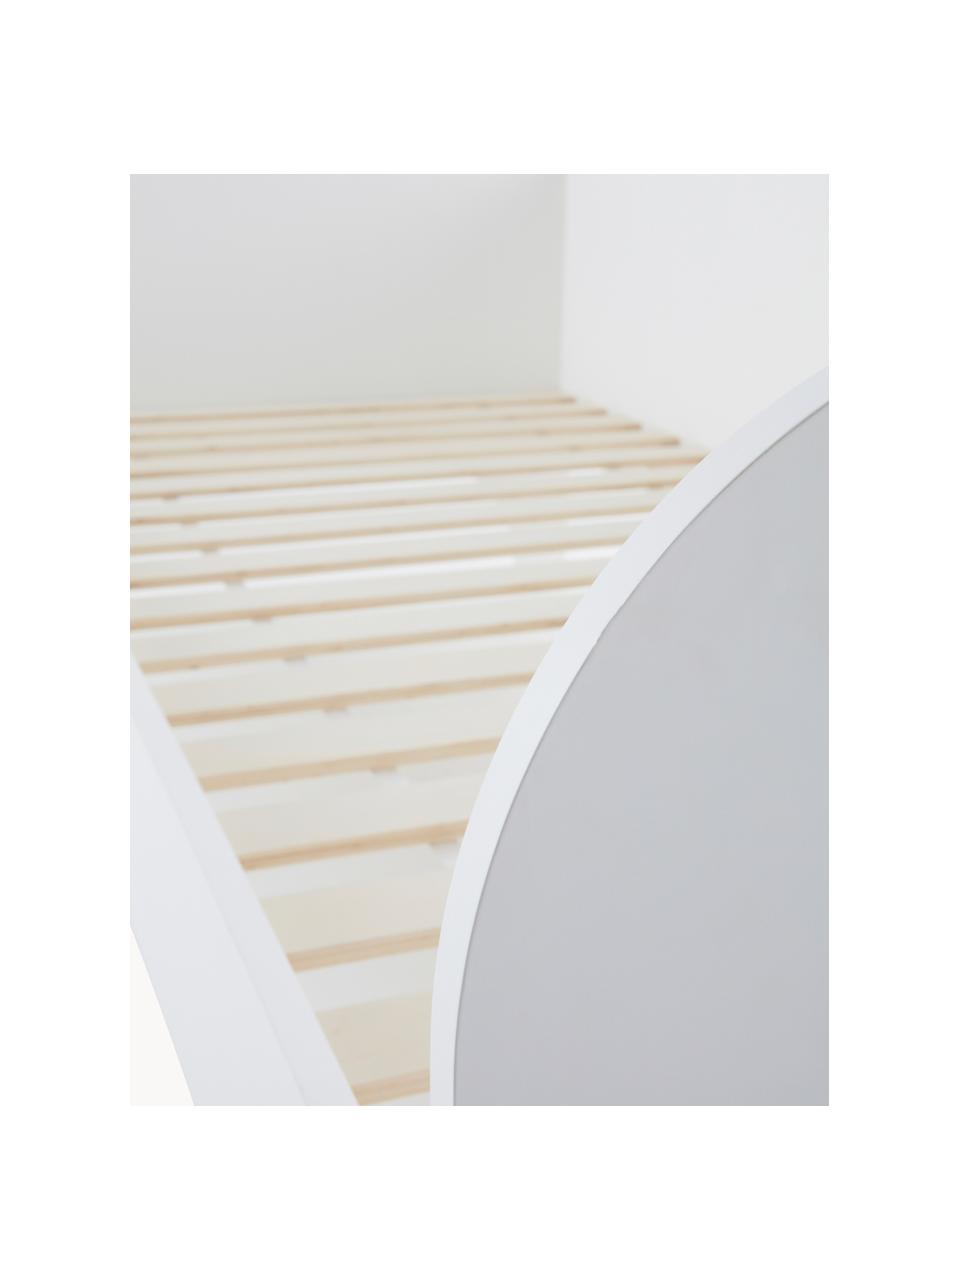 Holz-Kinderbett Phant, 90 x 200 cm, Mitteldichte Holzfaserplatte (MDF), Holz, weiß lackiert, B 90 x L 200 cm